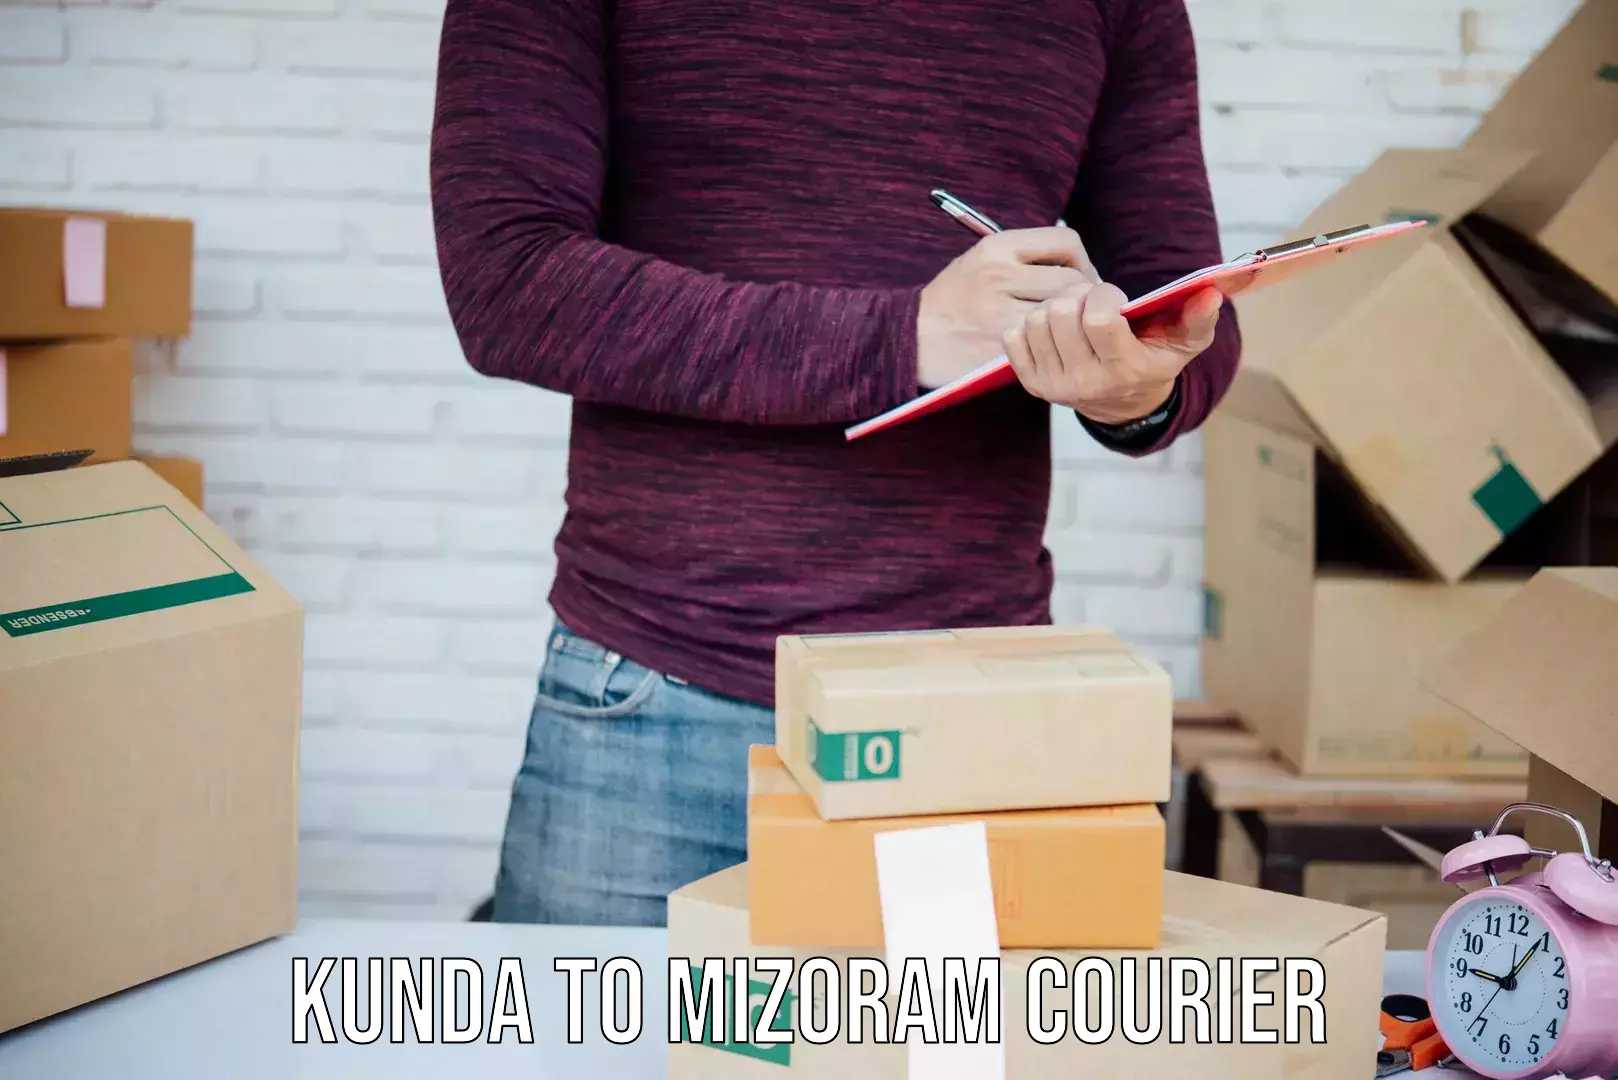 Affordable shipping solutions Kunda to Mizoram